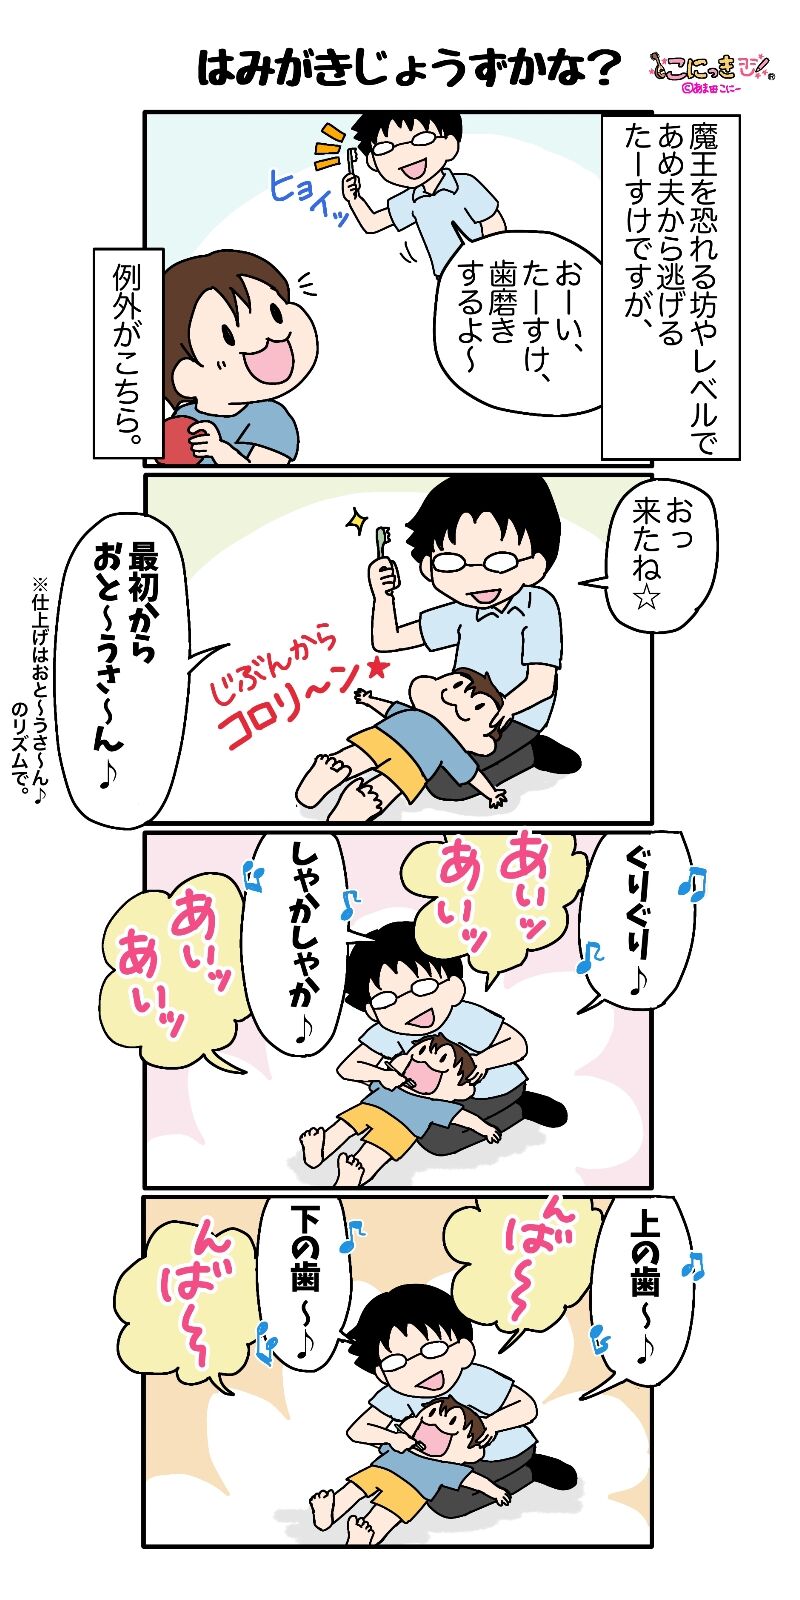 362 はみがきじょうずかな こにっき あま田さんちの陽気な育児漫画